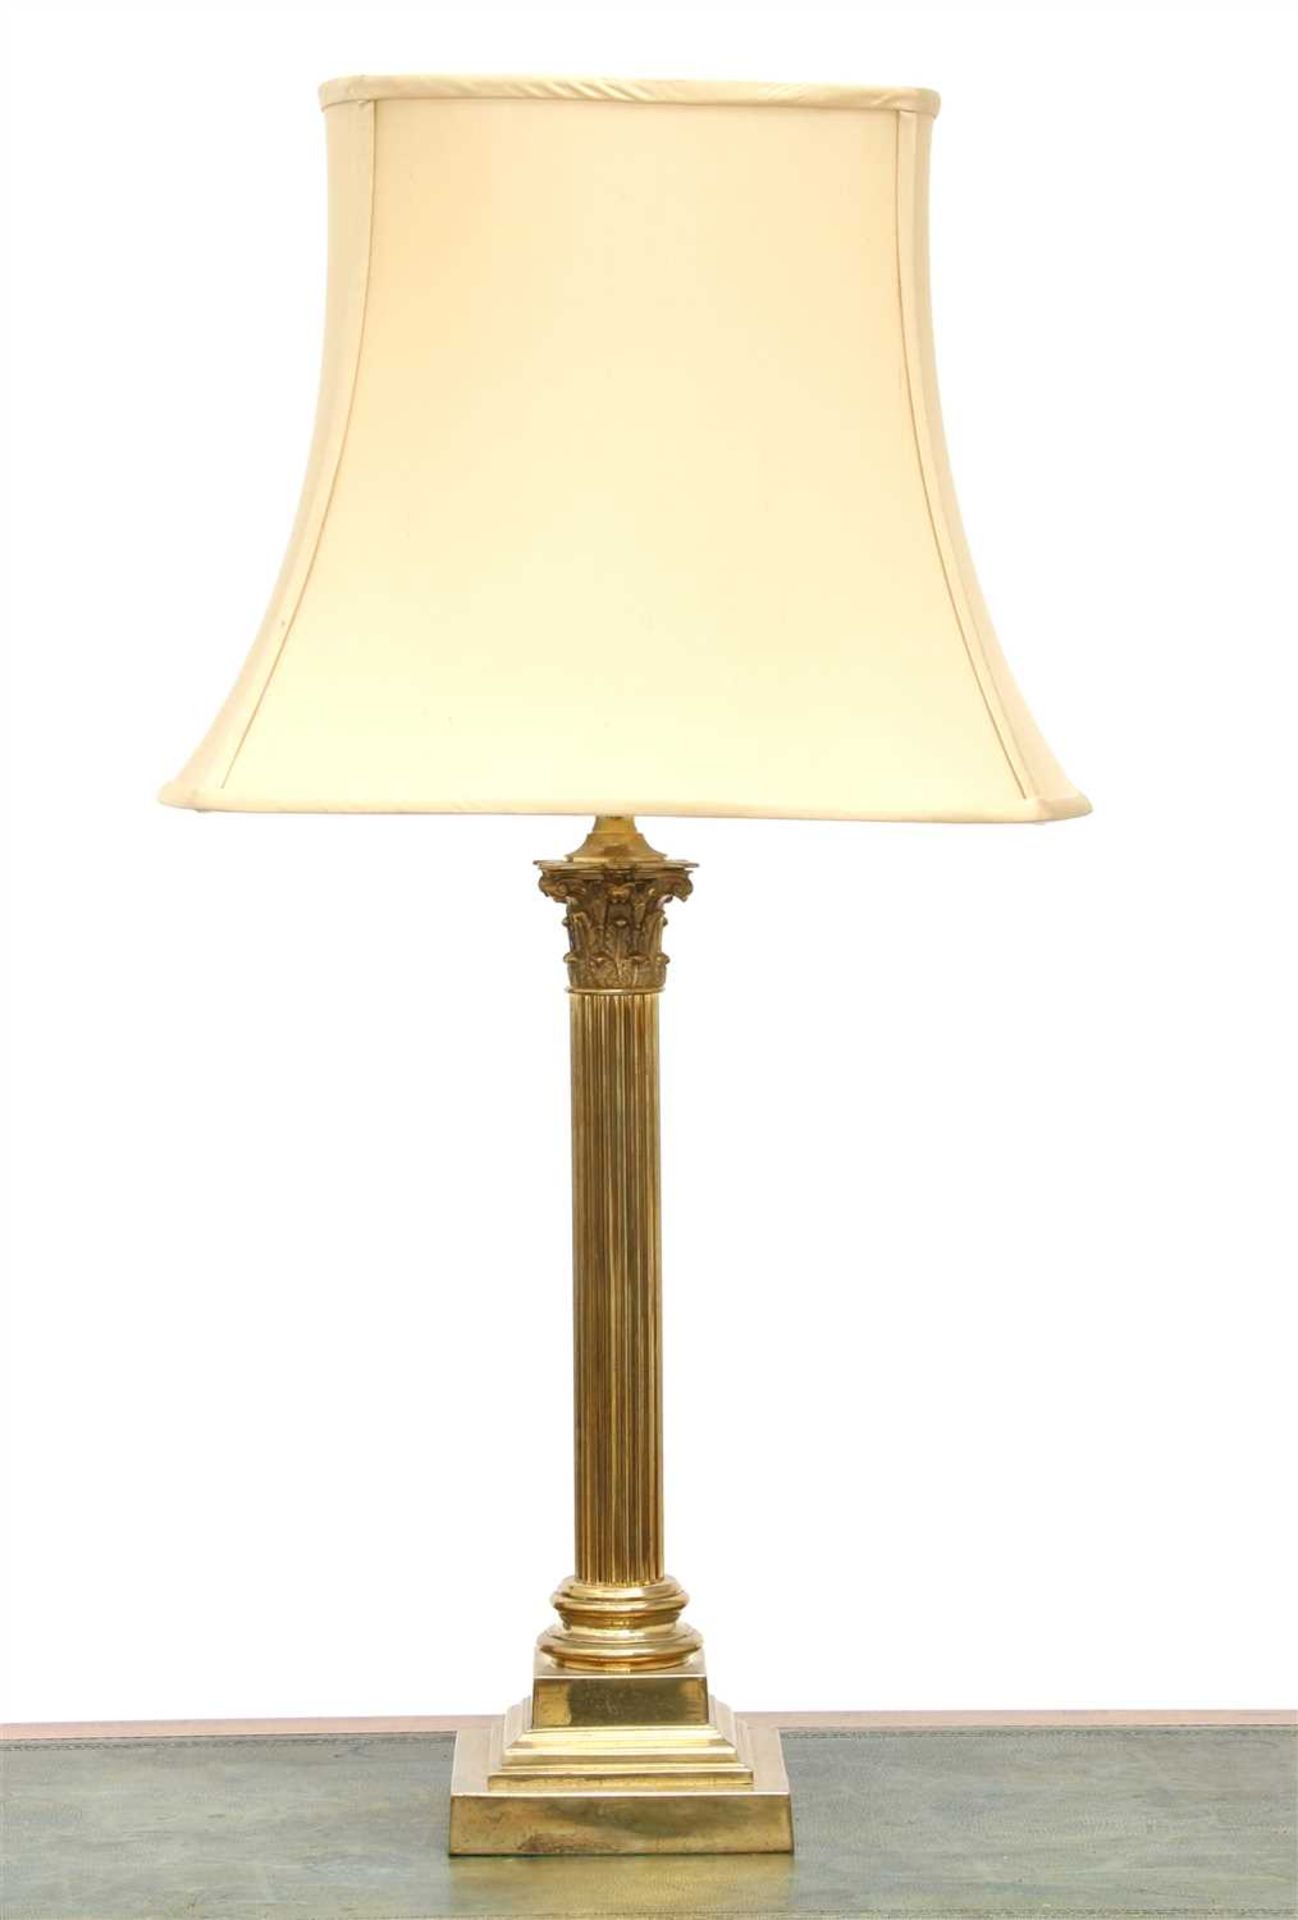 A brass candlestick table lamp, - Bild 2 aus 2